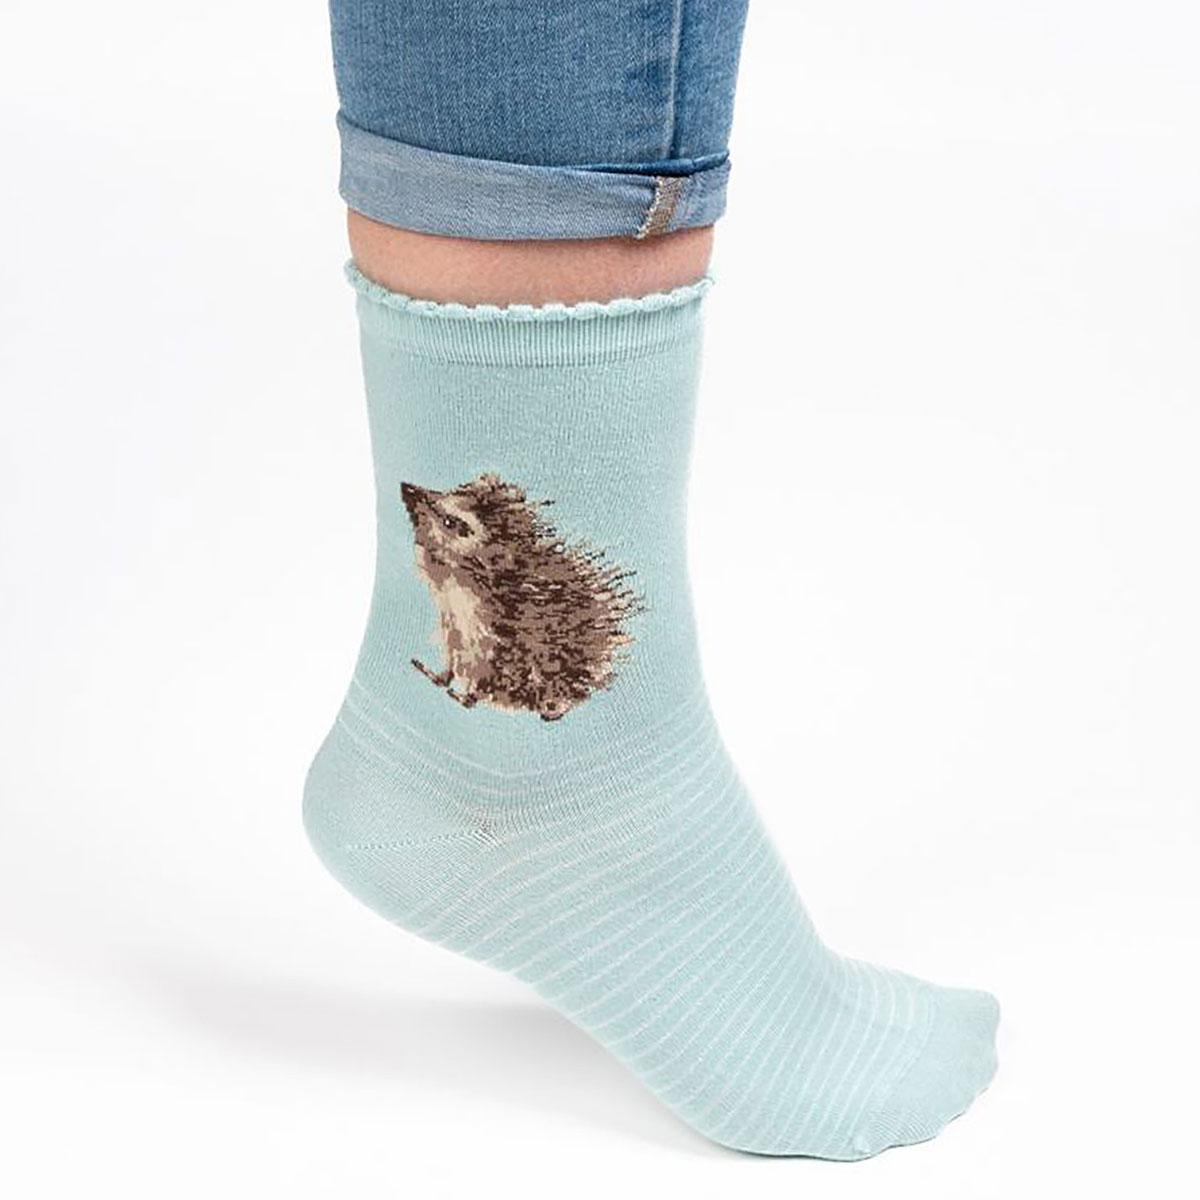 Hedgehog "Hedgehugs" Socks by Wrendale